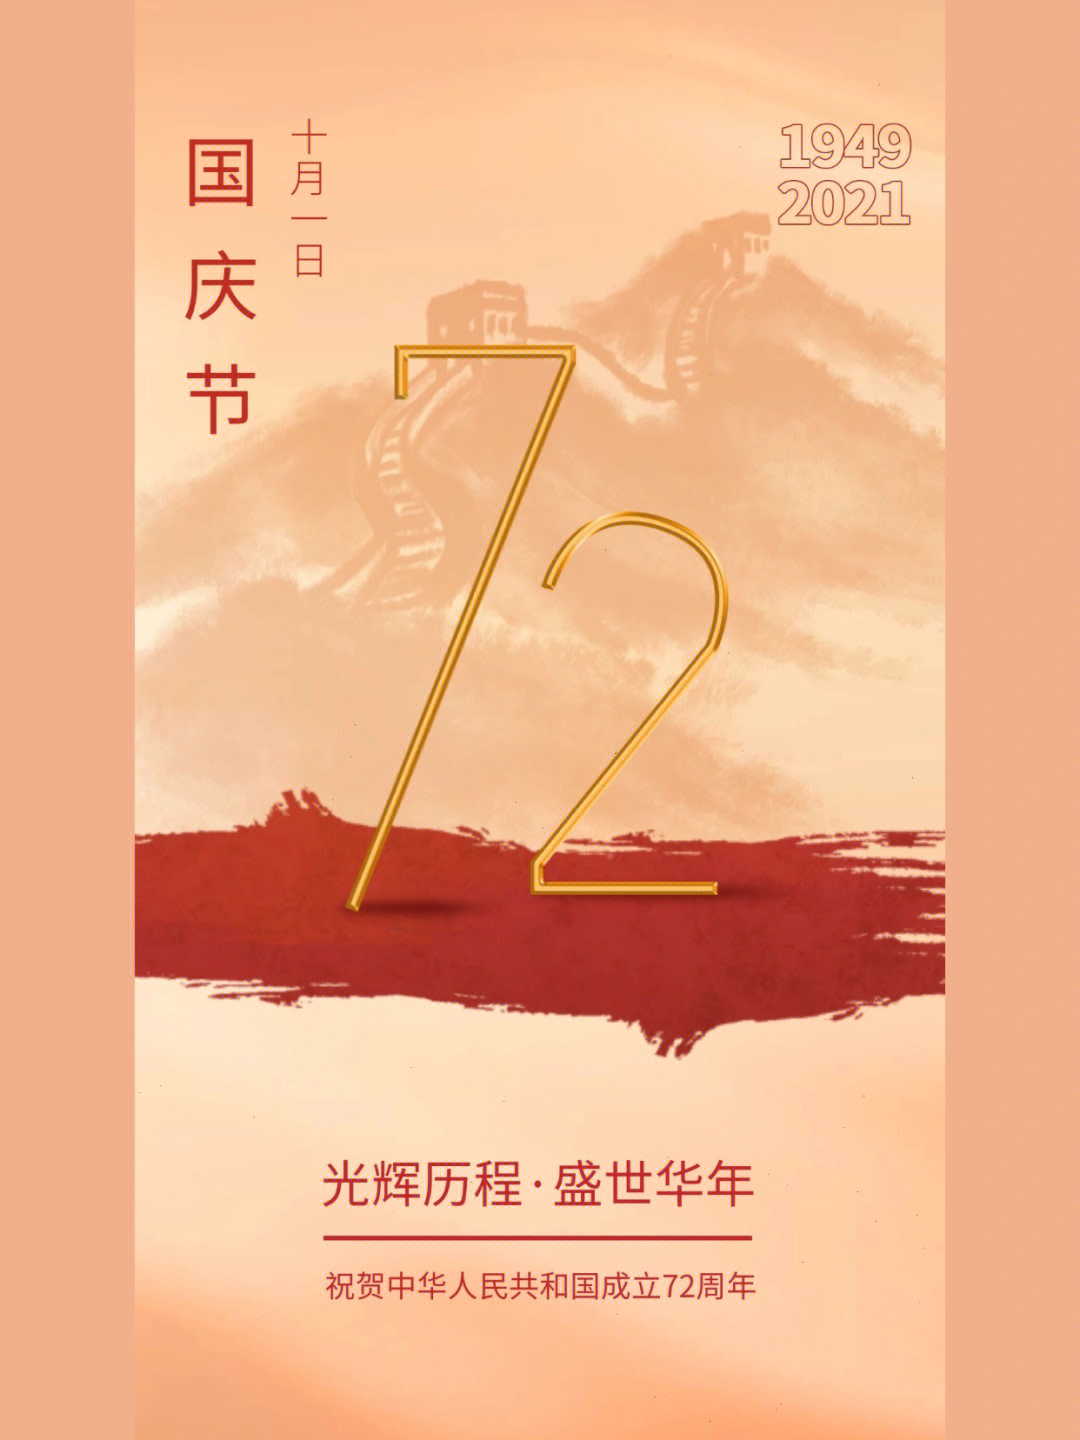 十一国庆节文案祝福77海报设计